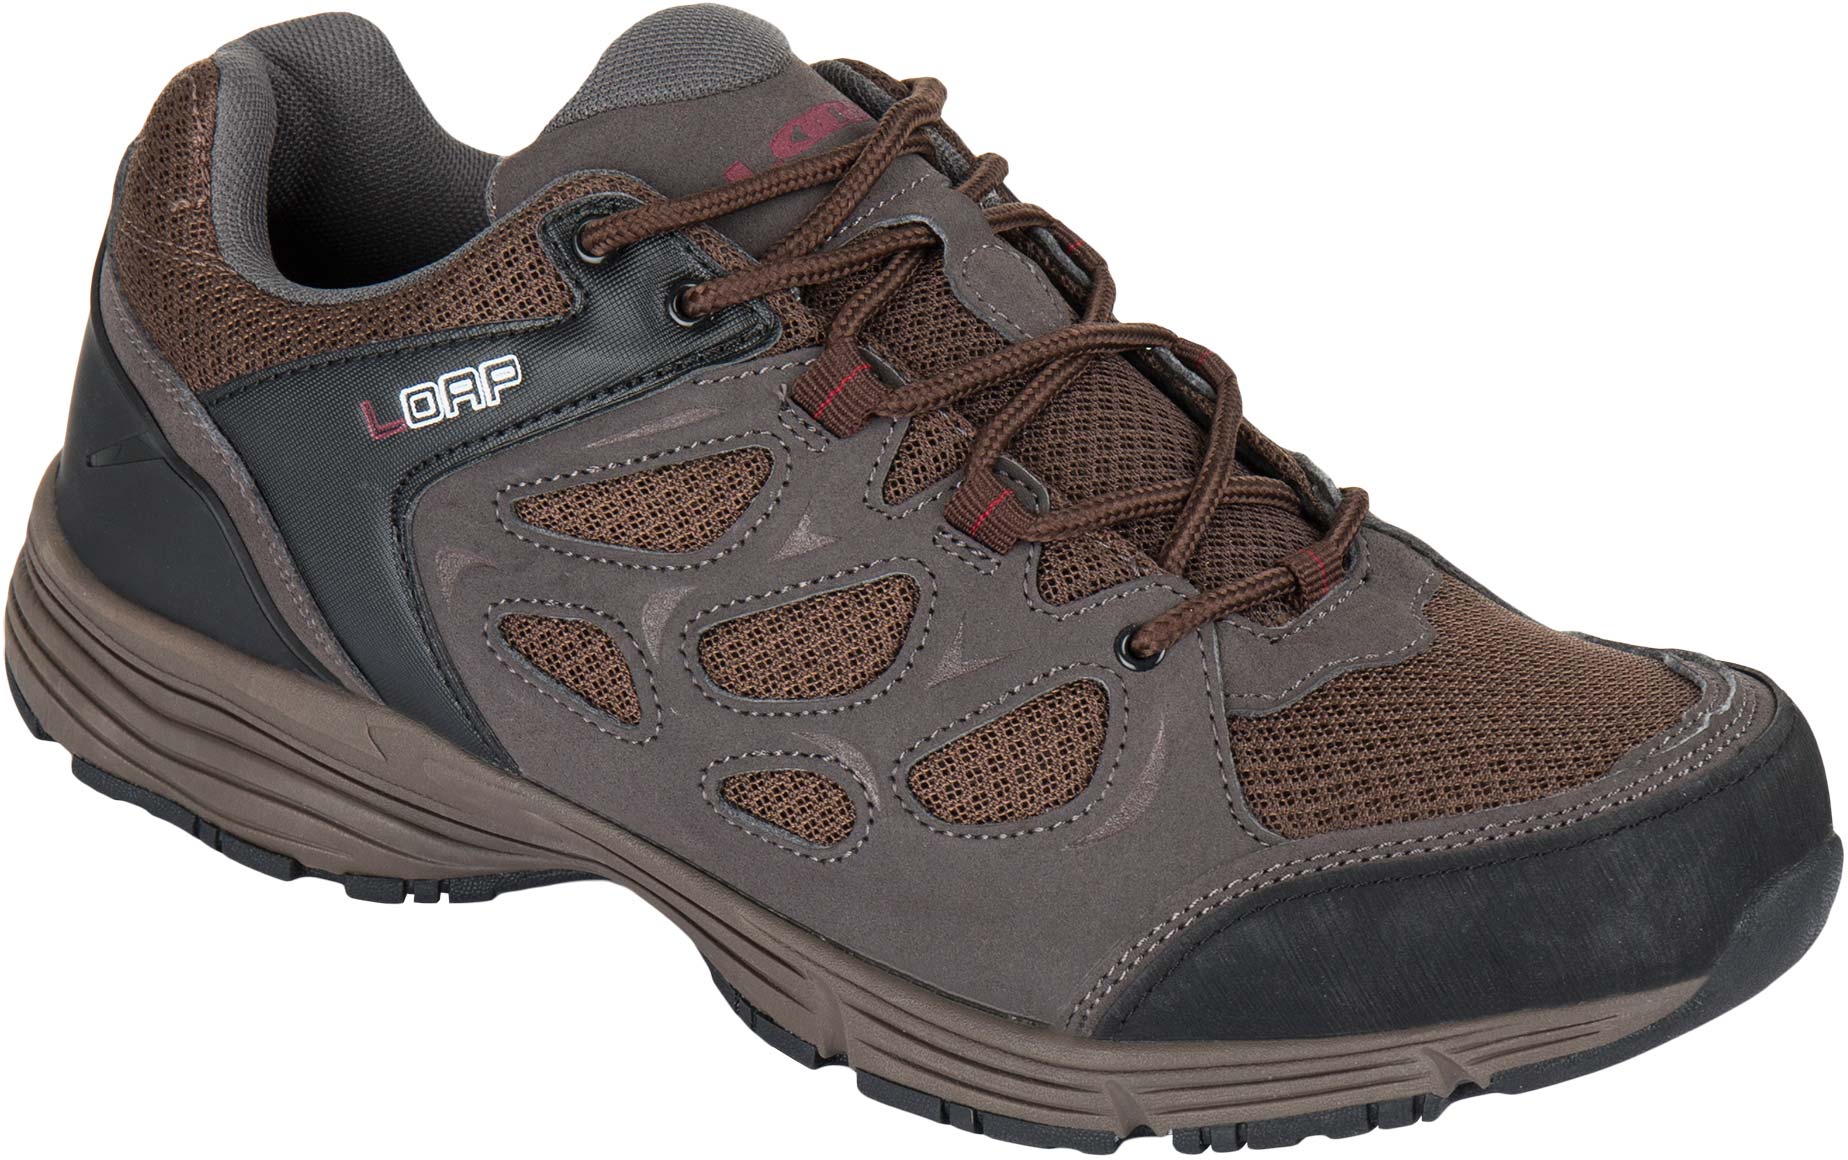 Men's outdoor shoes